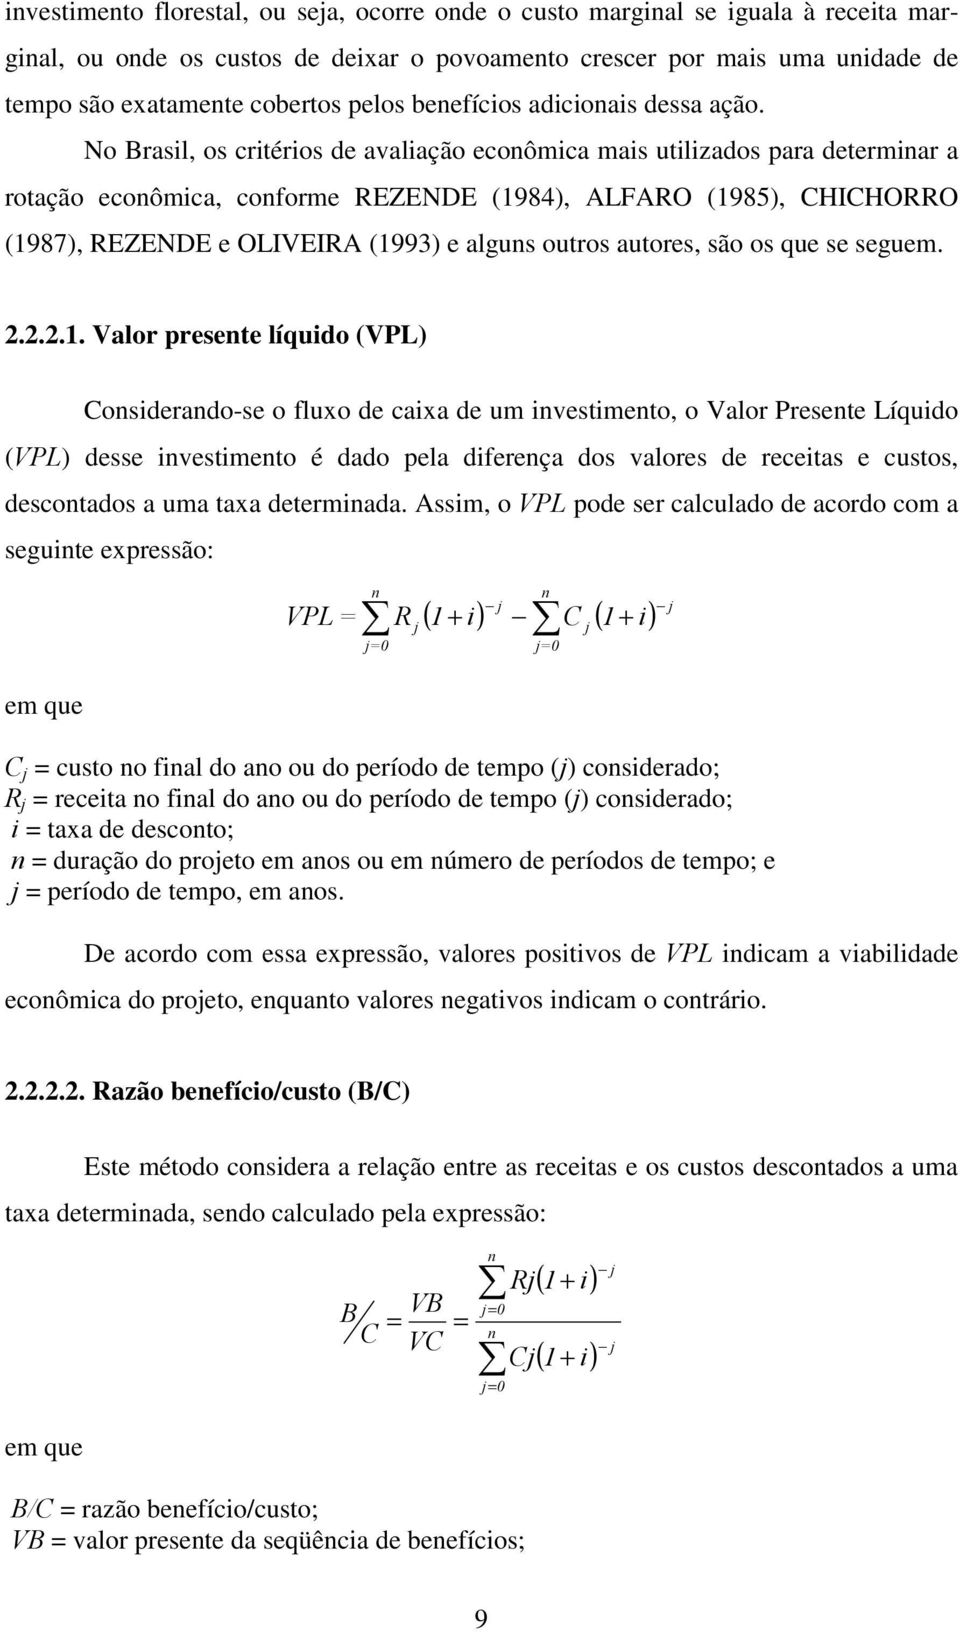 No Brasil, os critérios de avaliação econômica mais utilizados para determinar a rotação econômica, conforme REZENDE (1984), ALFARO (1985), CHICHORRO (1987), REZENDE e OLIVEIRA (1993) e alguns outros